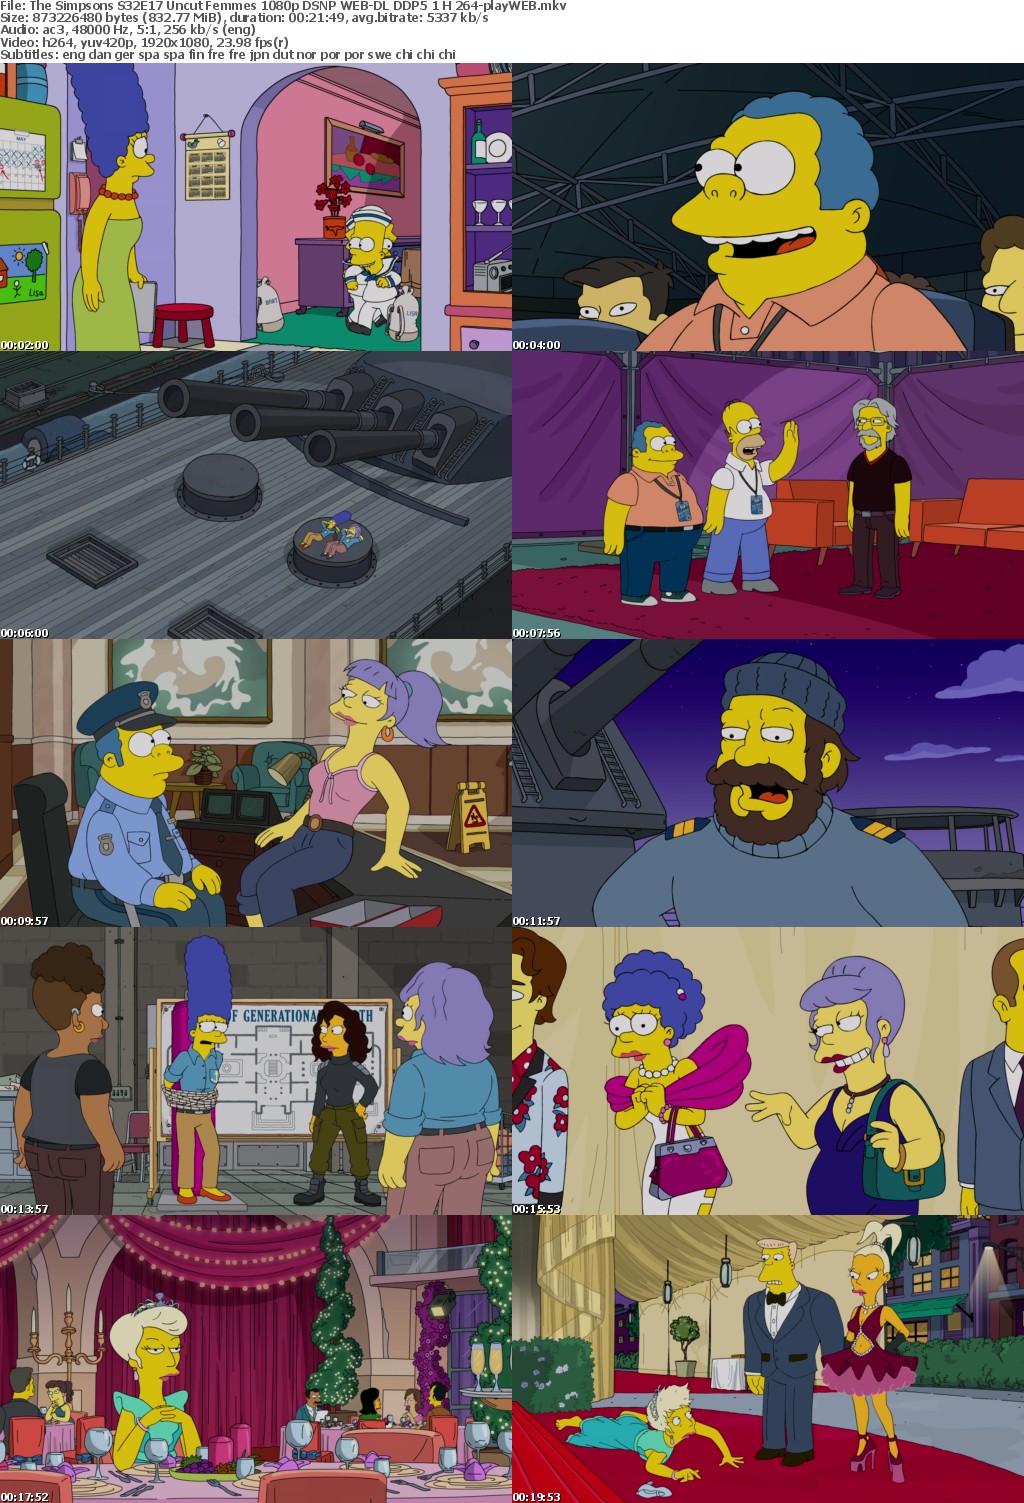 The Simpsons S32E17 Uncut Femmes 1080p DSNP WEB-DL DDP5 1 H 264-playWEB